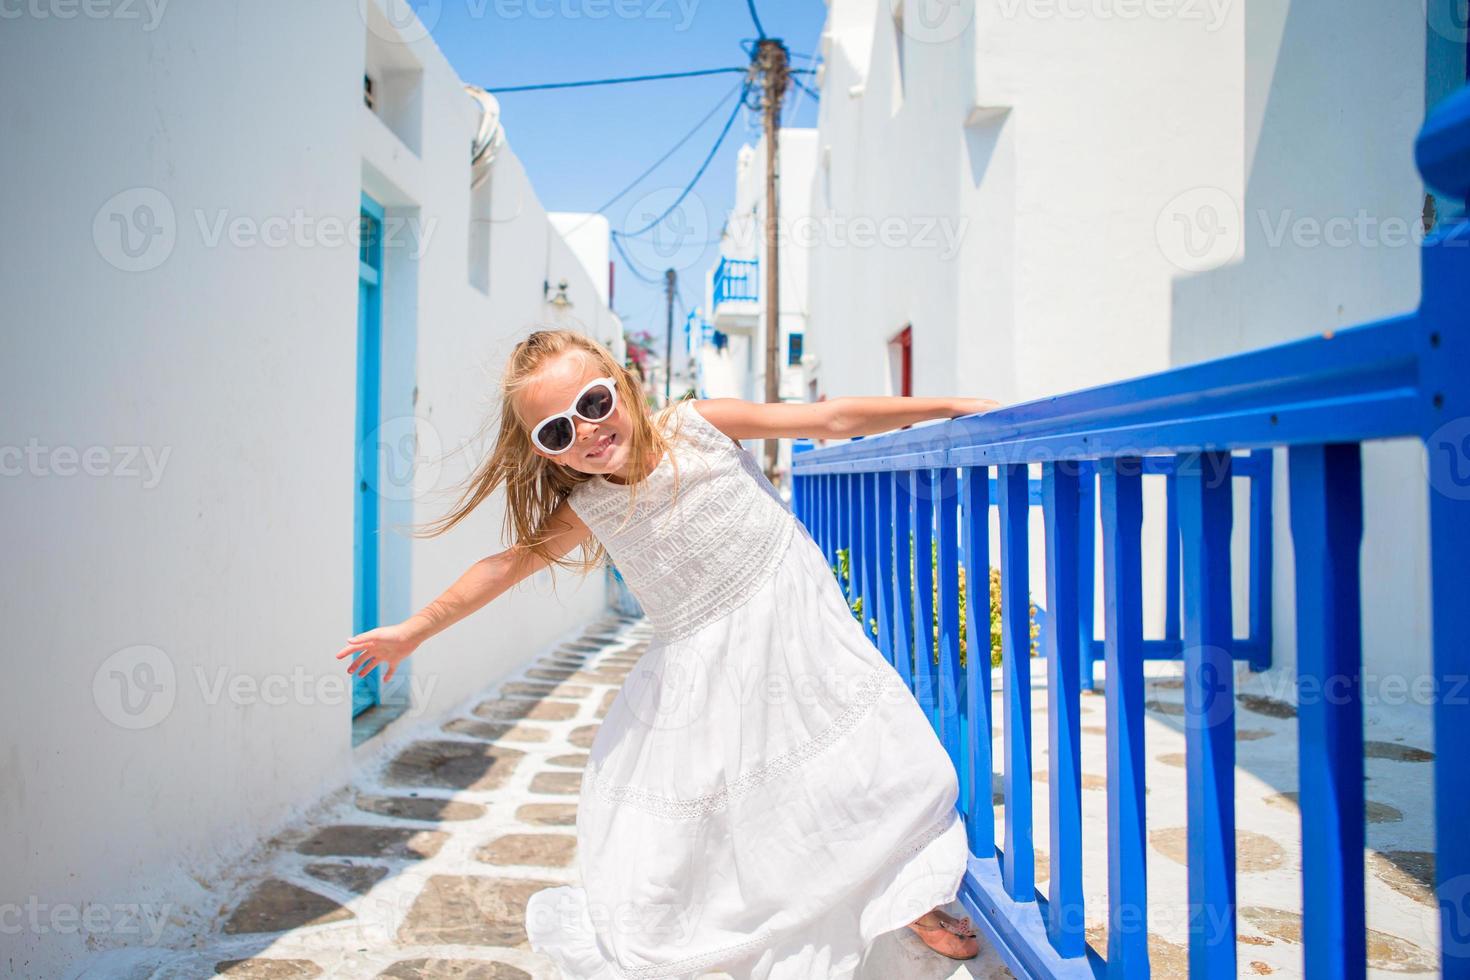 encantadora chica vestida de blanco al aire libre en calles antiguas y mykonos. niño en la calle del típico pueblo tradicional griego con paredes blancas y puertas coloridas en la isla de mykonos, en grecia foto